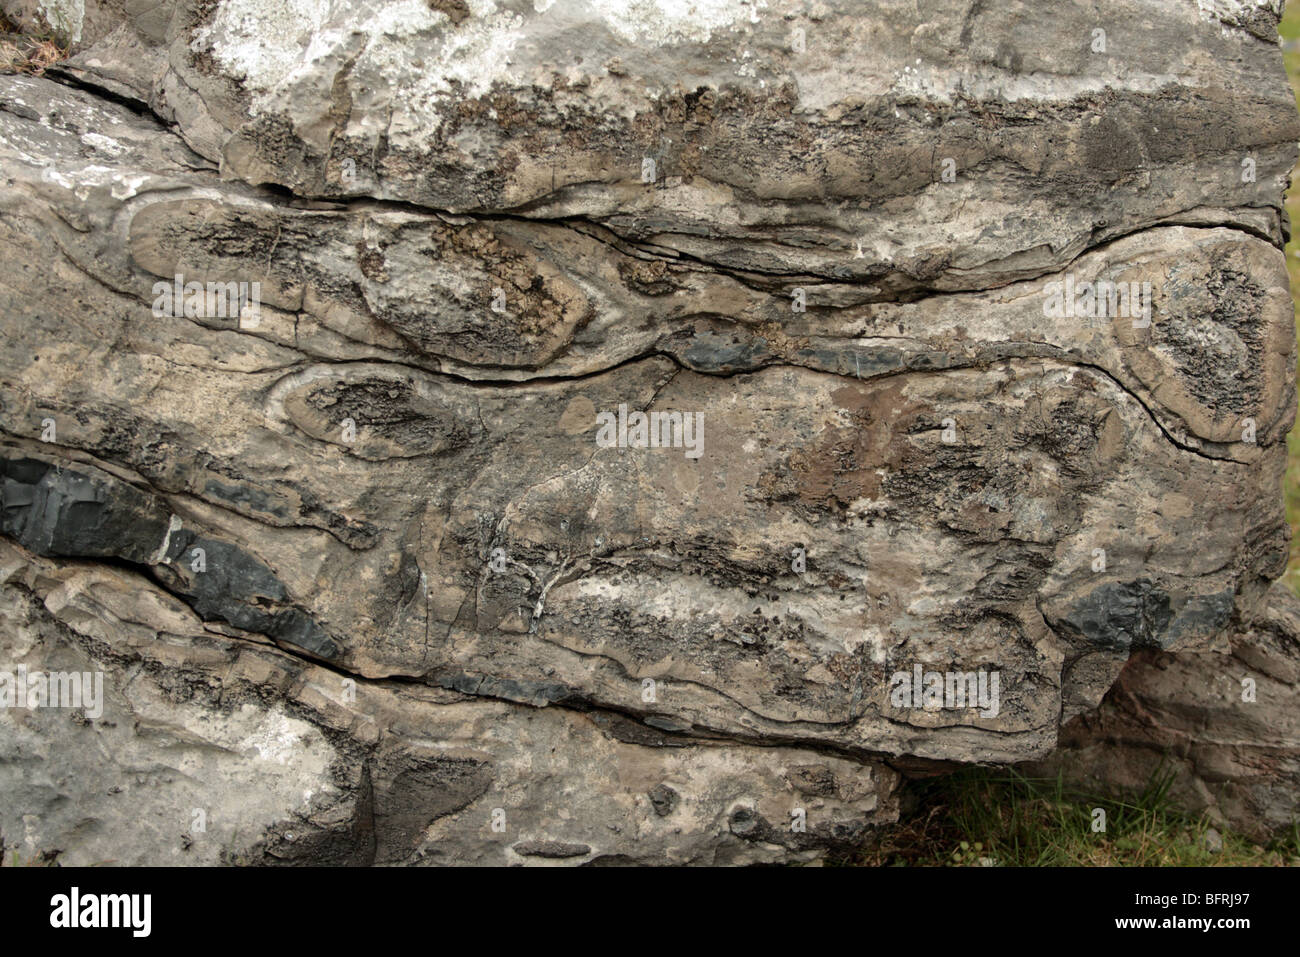 Formación geológica de un animal divertido en la roca. Foto de stock